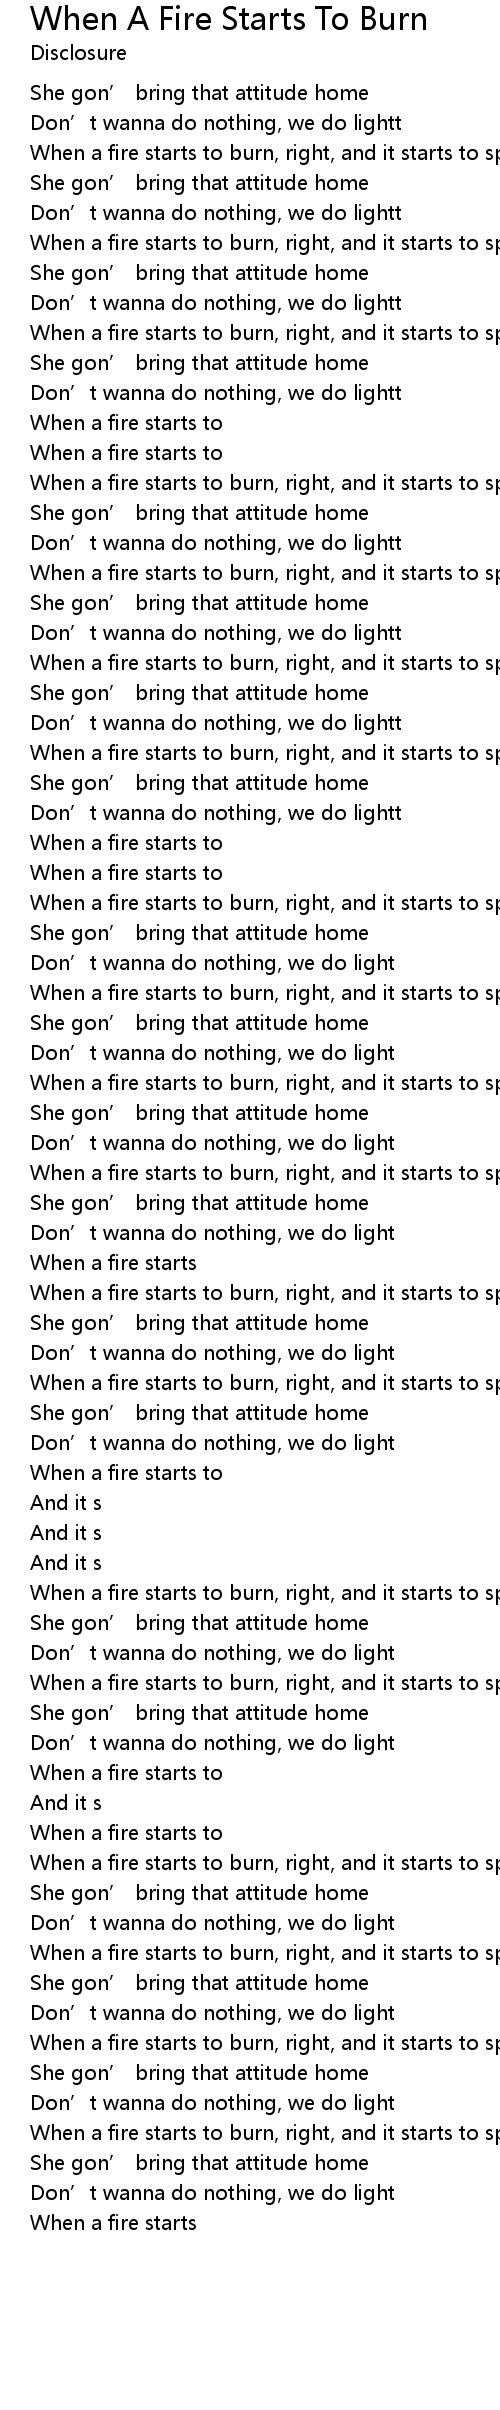 When A Fire Starts To Burn Lyrics - Follow Lyrics